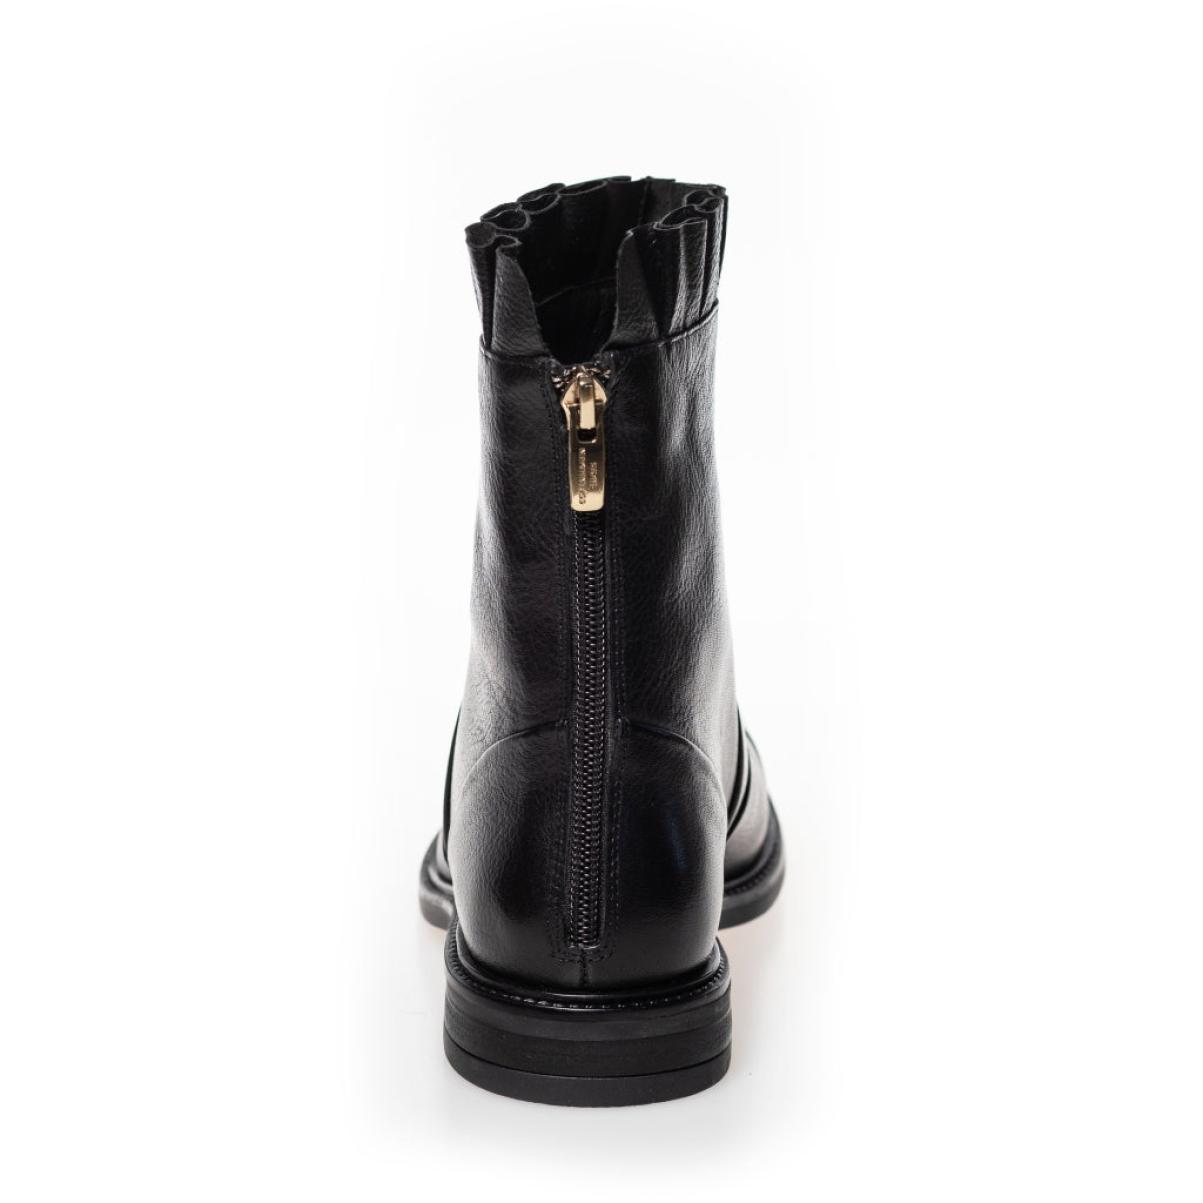 Ankle Boots Margaret - Black W/Patent Toe Top Copenhagen Shoes Women - 3